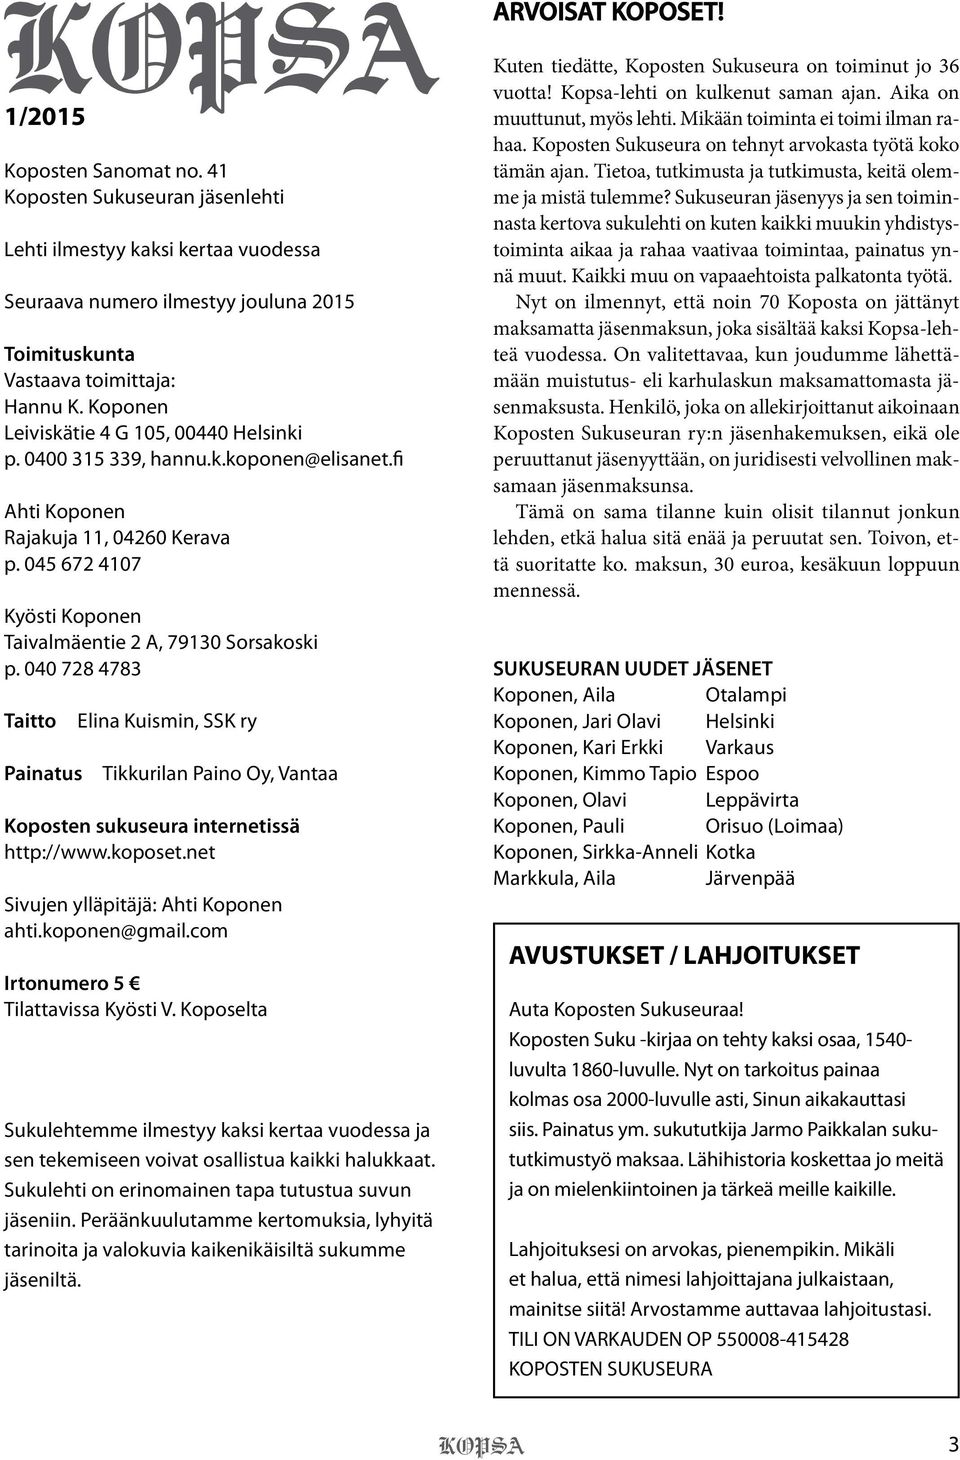 040 728 4783 Taitto Painatus Elina Kuismin, SSK ry Tikkurilan Paino Oy, Vantaa Koposten sukuseura internetissä http://www.koposet.net Sivujen ylläpitäjä: Ahti Koponen ahti.koponen@gmail.